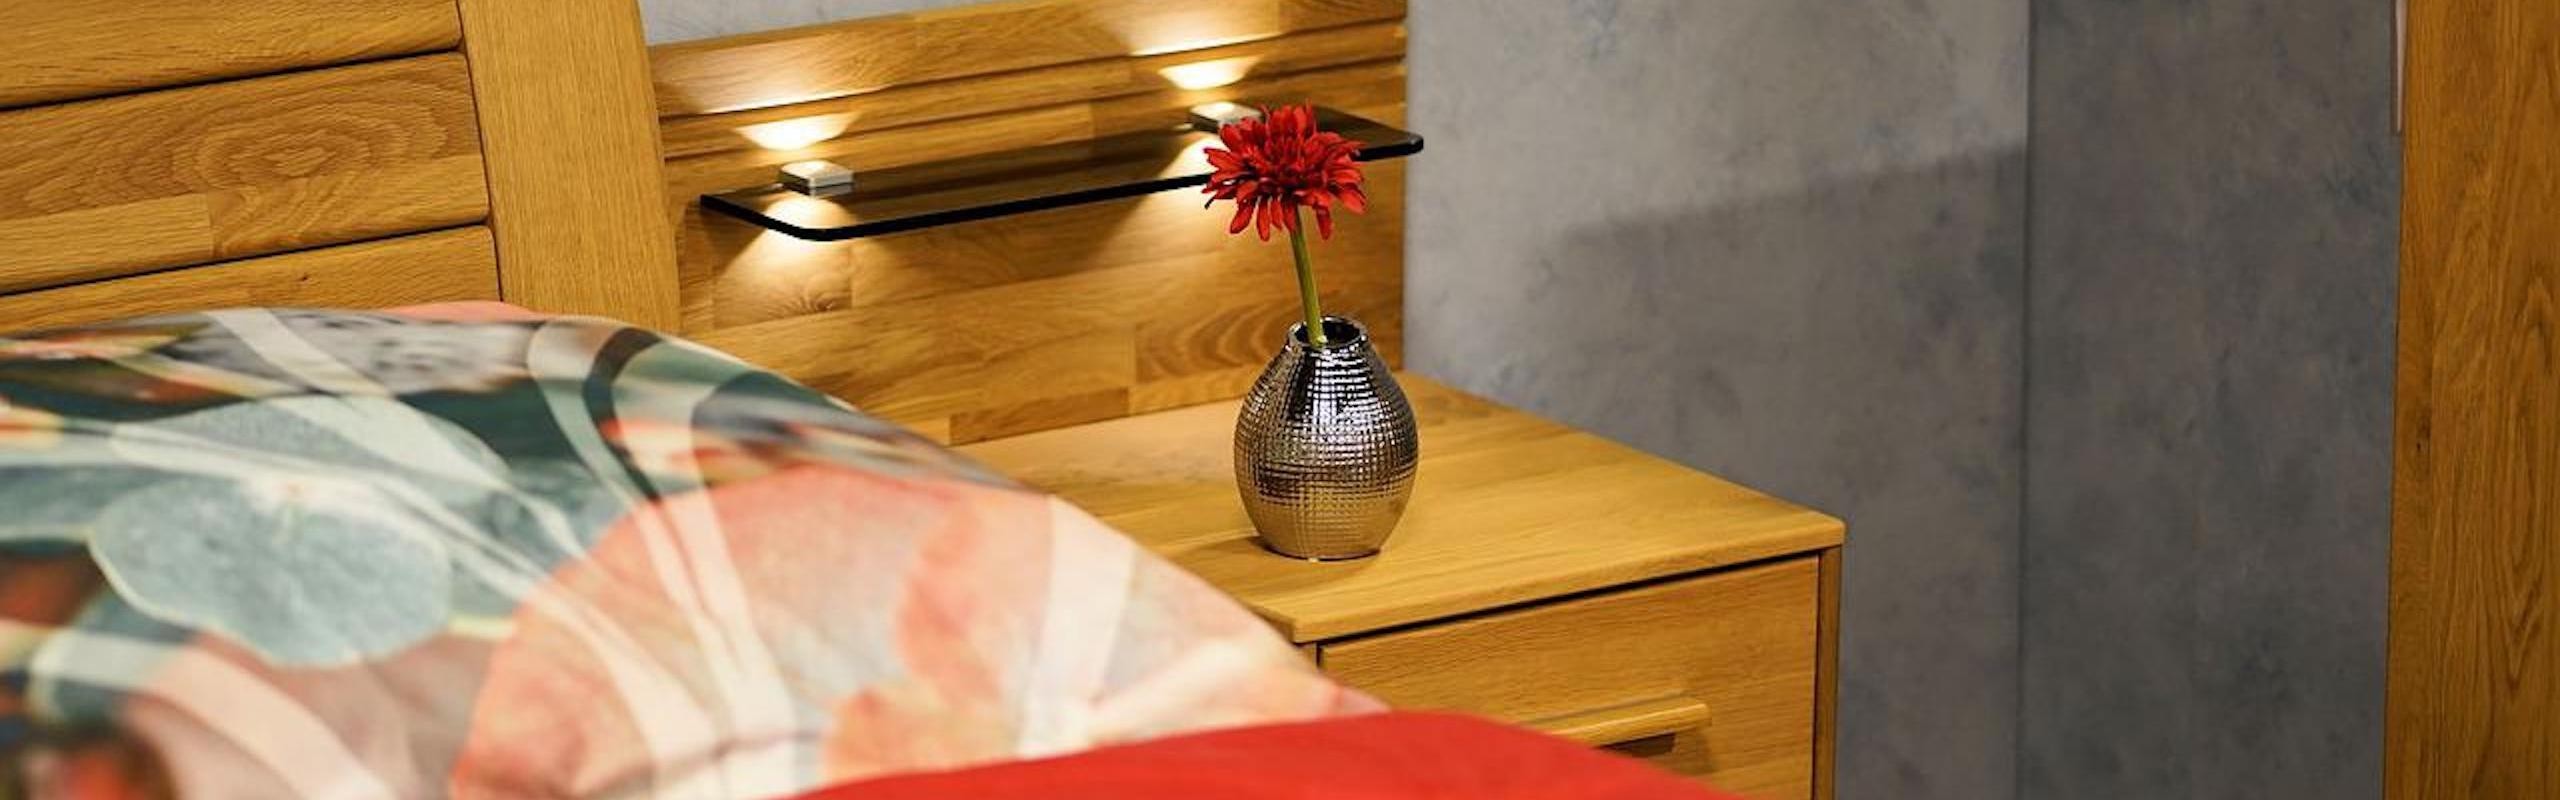 Ein gemütliches Holzbett mit bunter Bettwäsche und einer Blumenvase auf dem Nautisch mit einer roten Blume drin